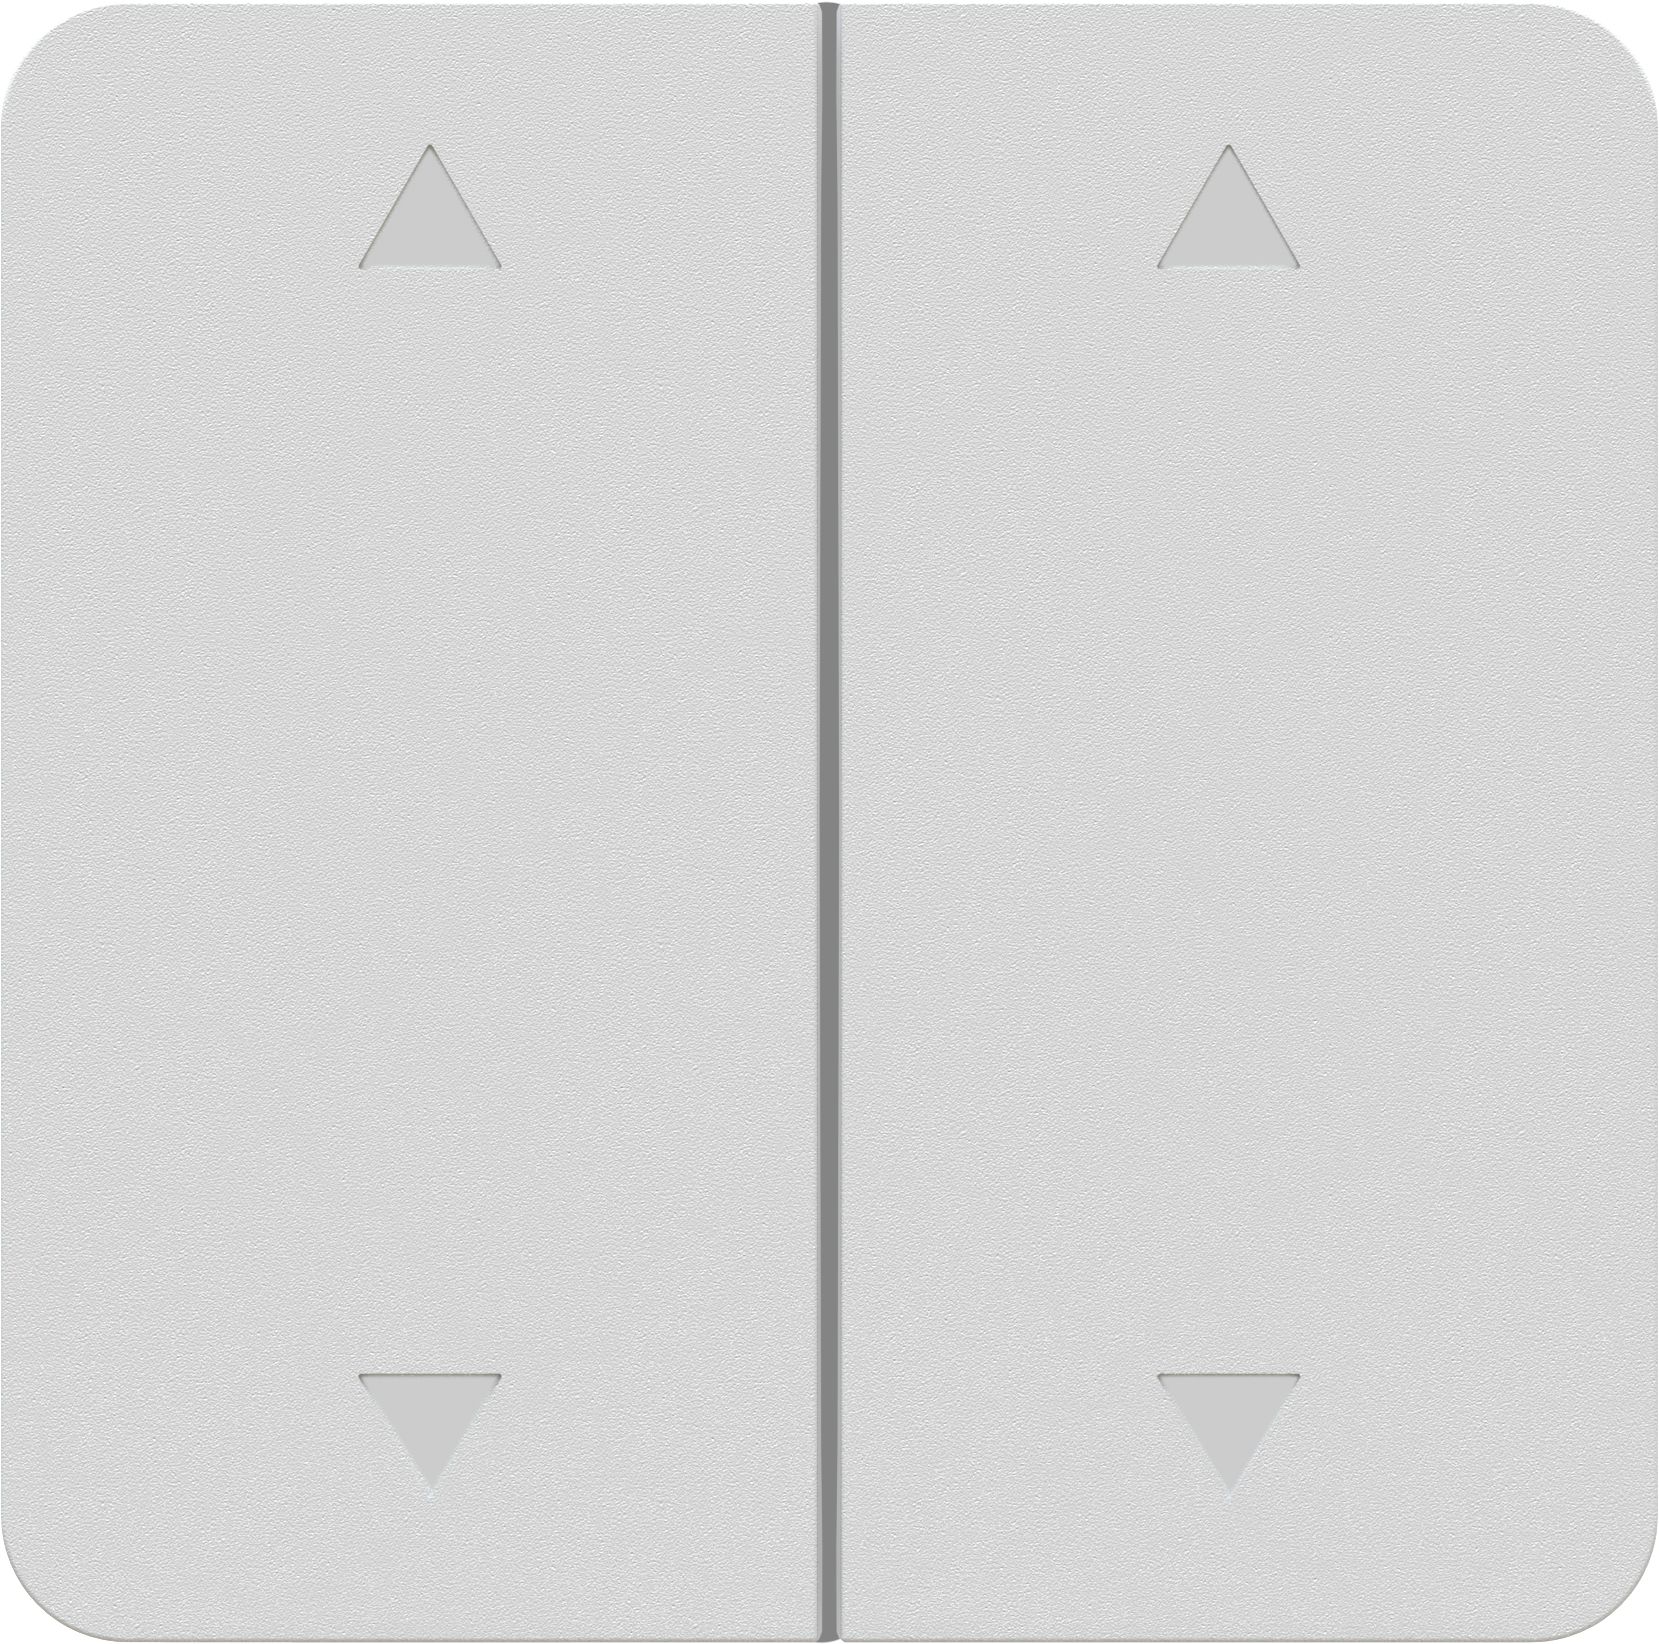 Doppel-Wippschalter 2x Storen Einsatz +Frontplatte priamos weiss